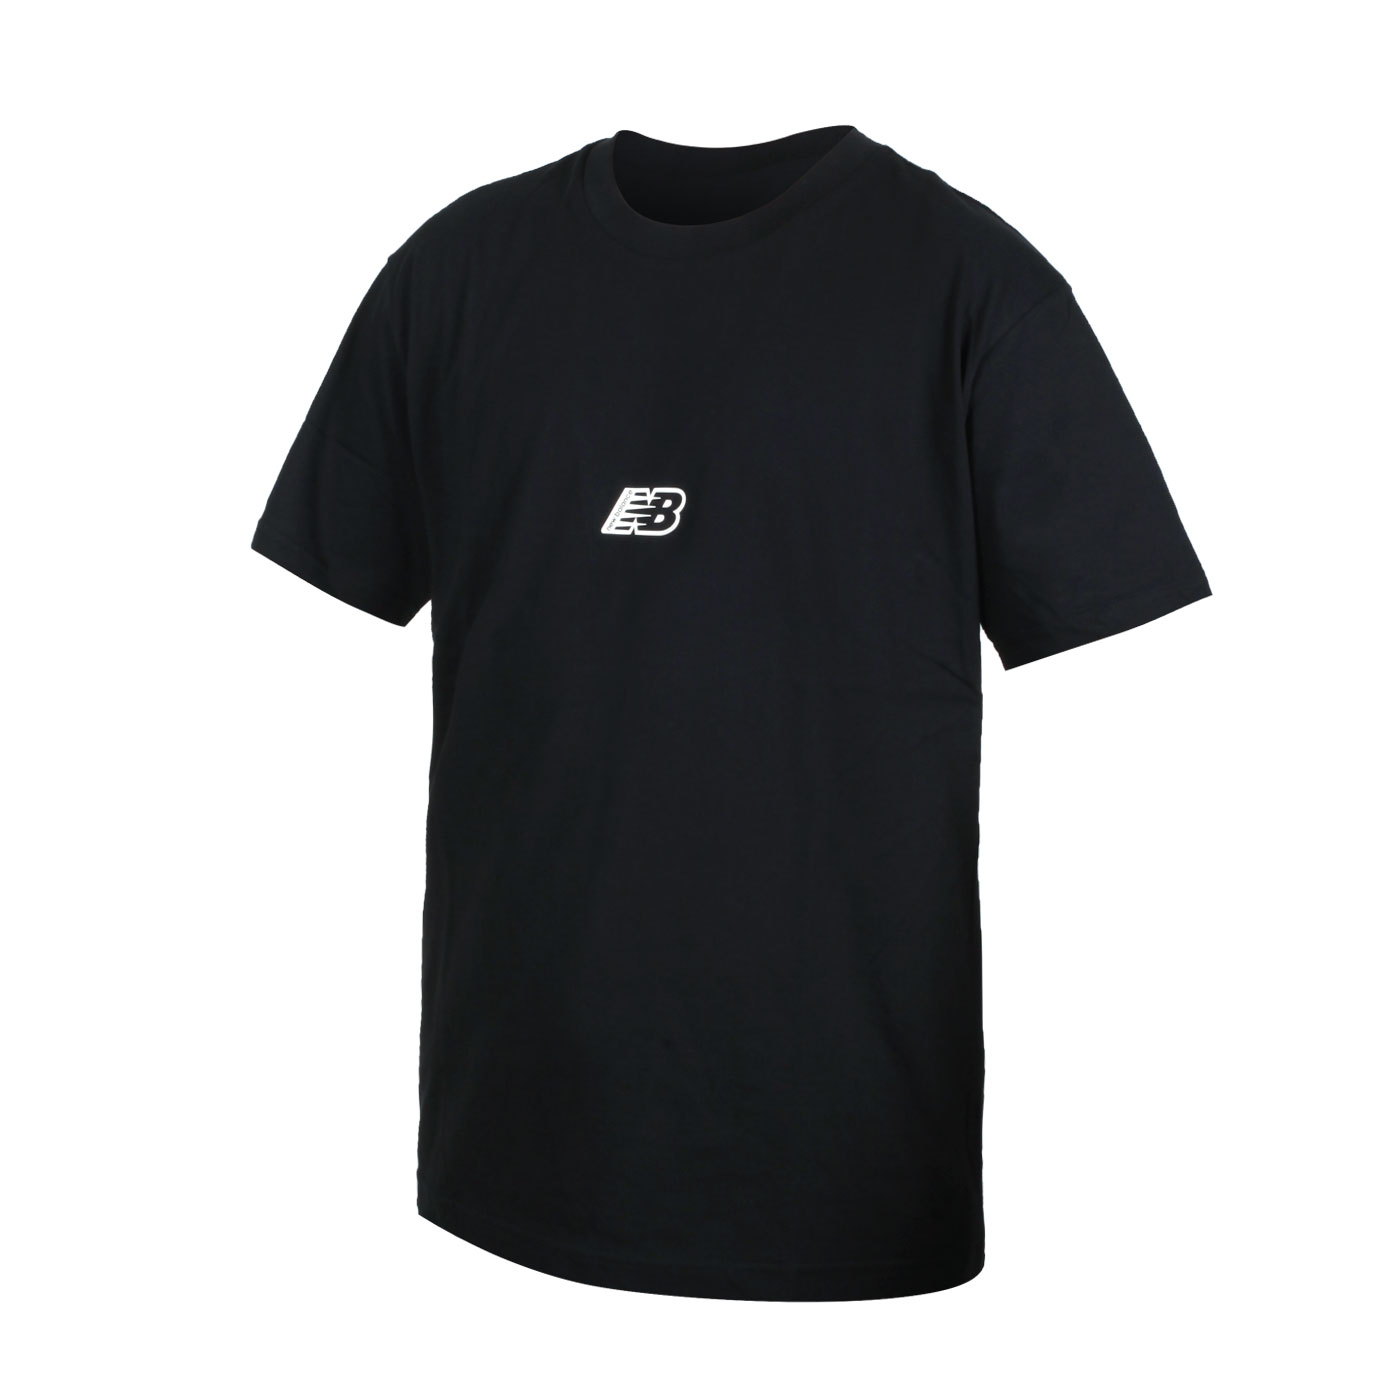 NEW BALANCE 男款短袖T恤 MT23514BK - 黑白